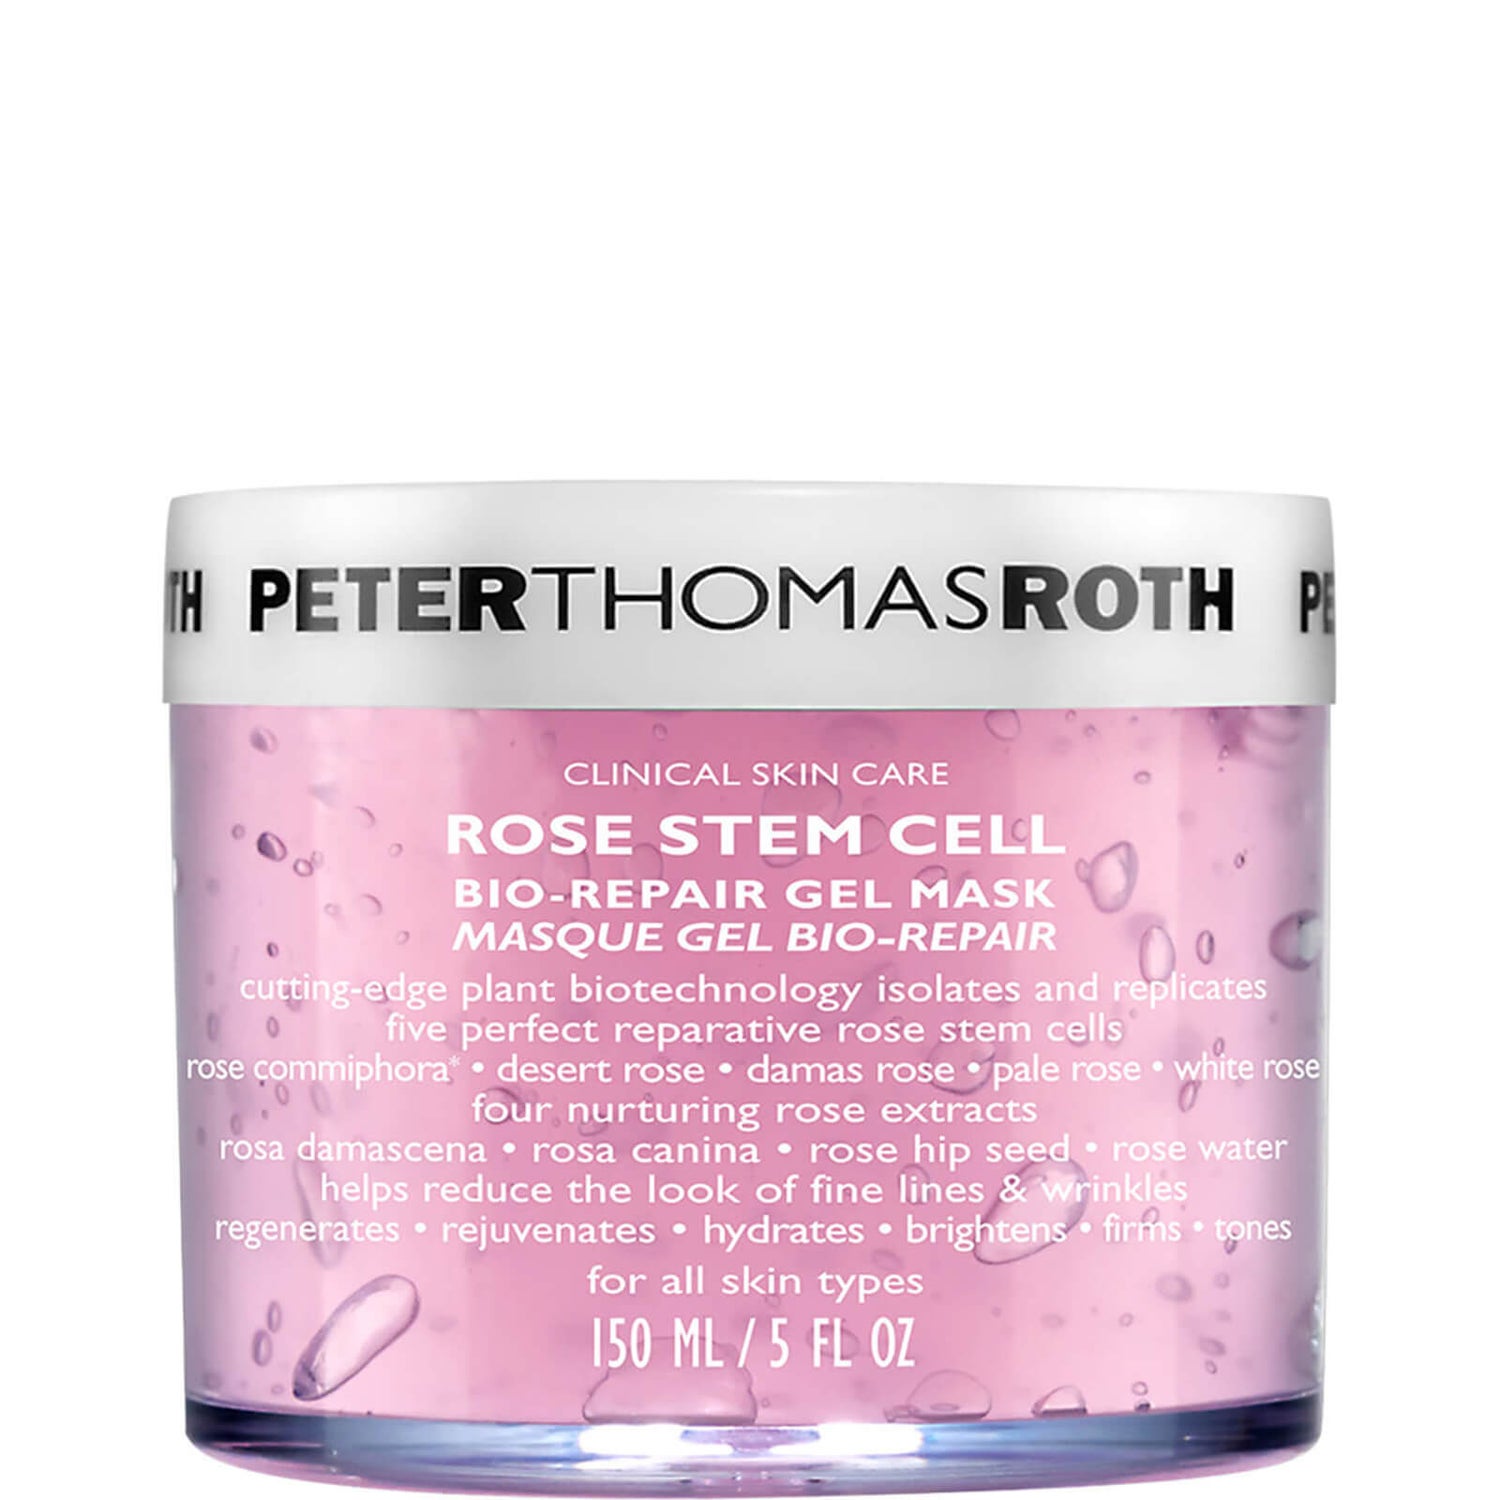 Peter Thomas Roth Rose Stem Cell: Bio-Repair Gel Mask 150ml